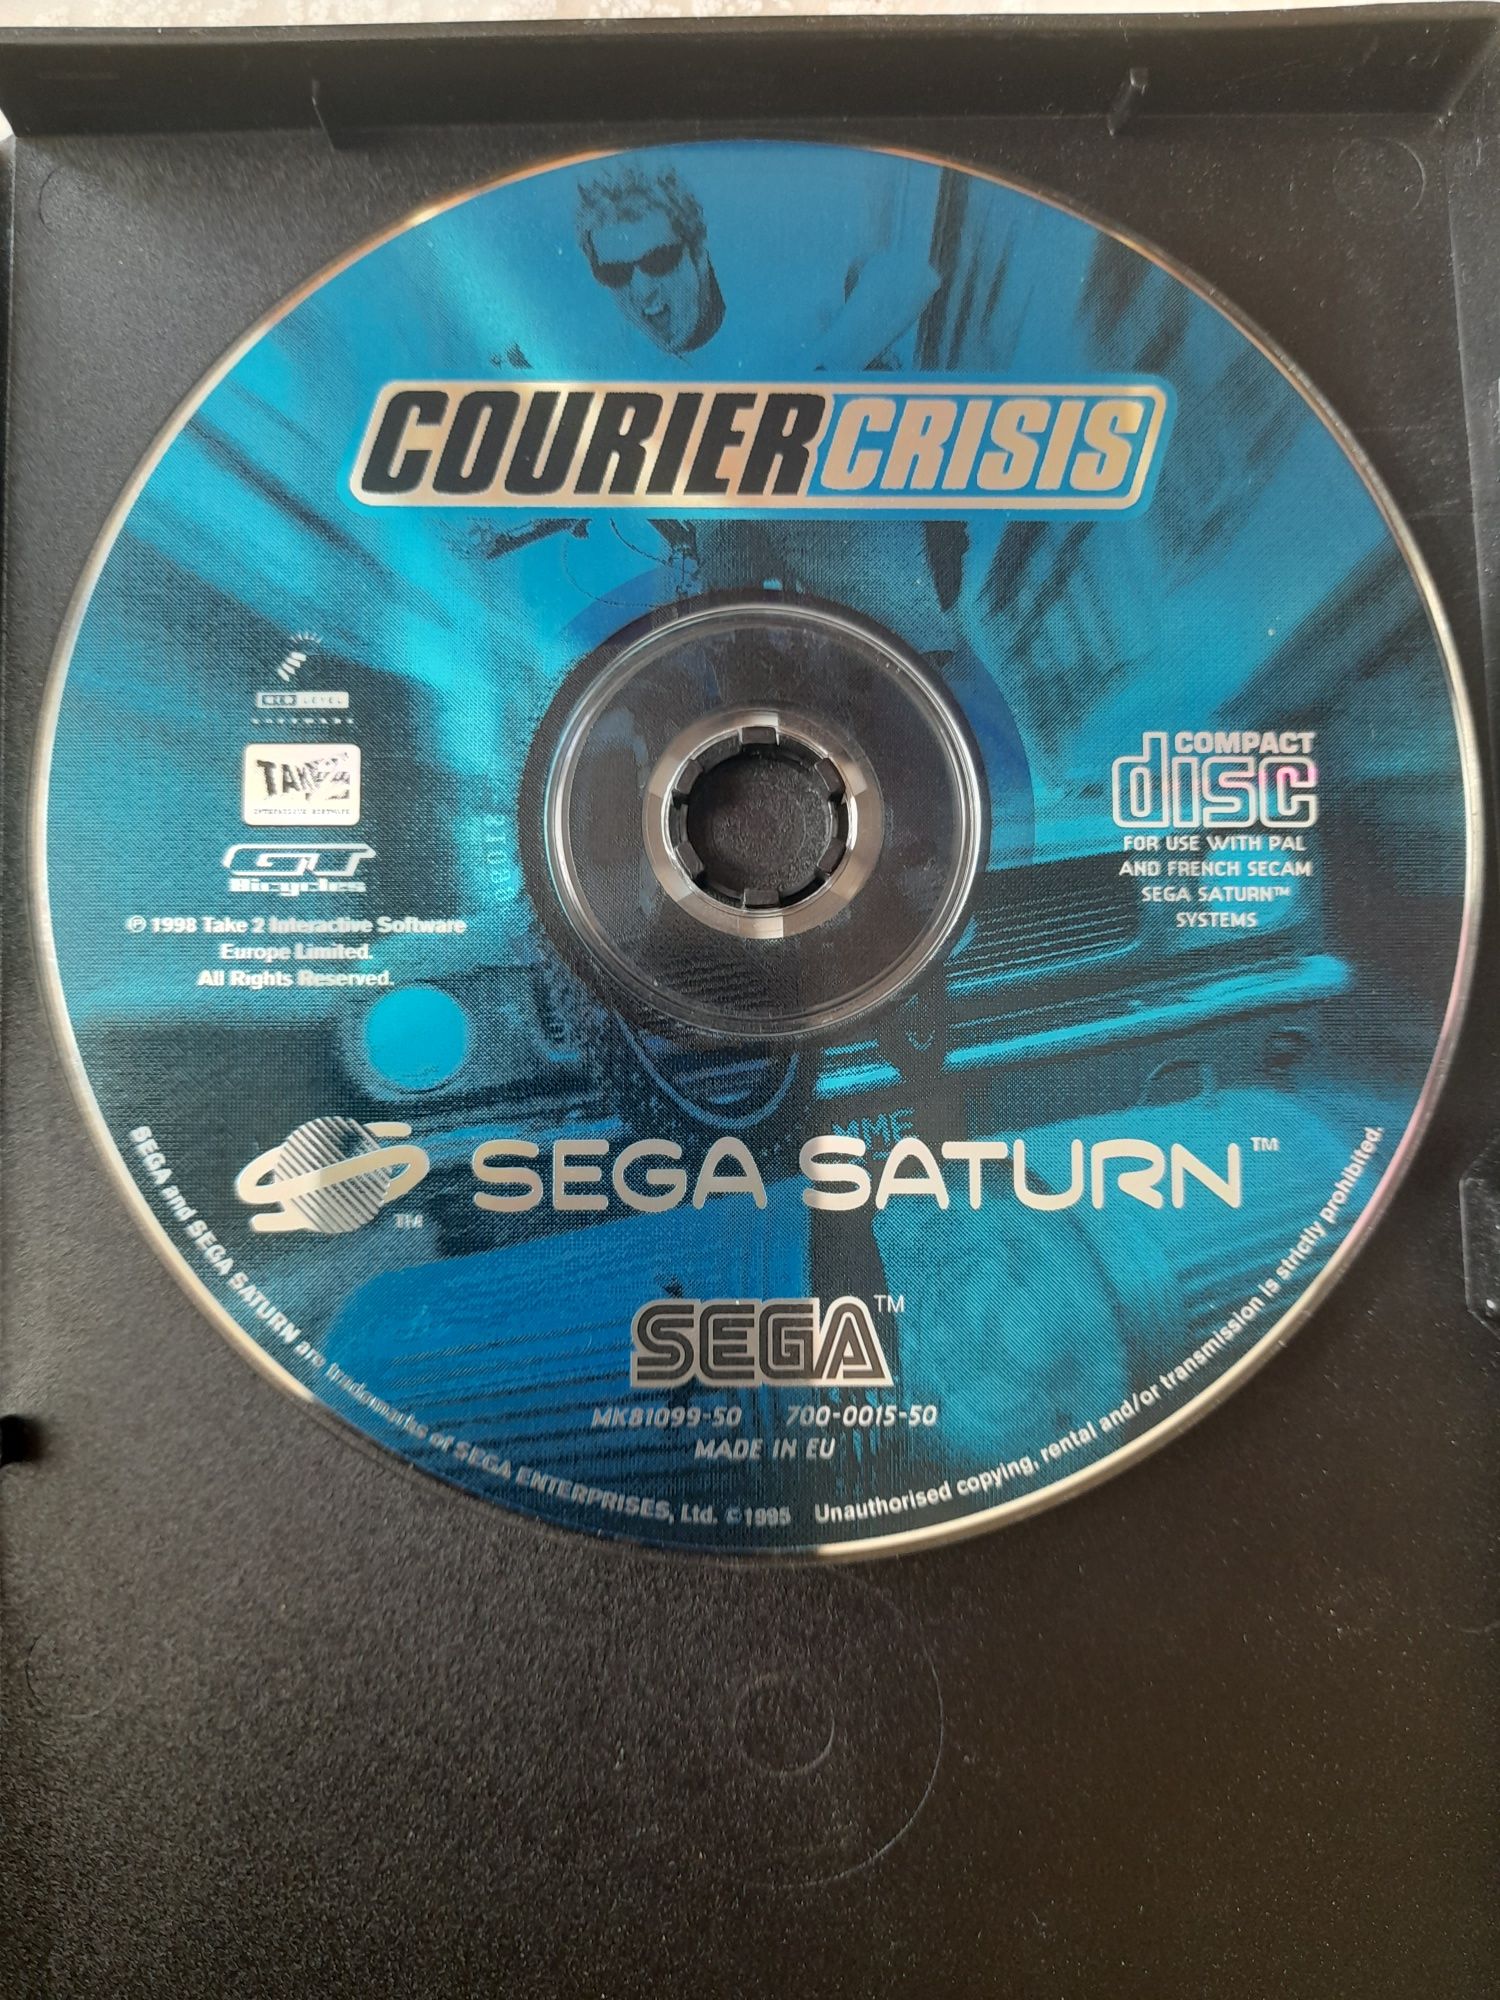 Courier Crisis Sega Saturn